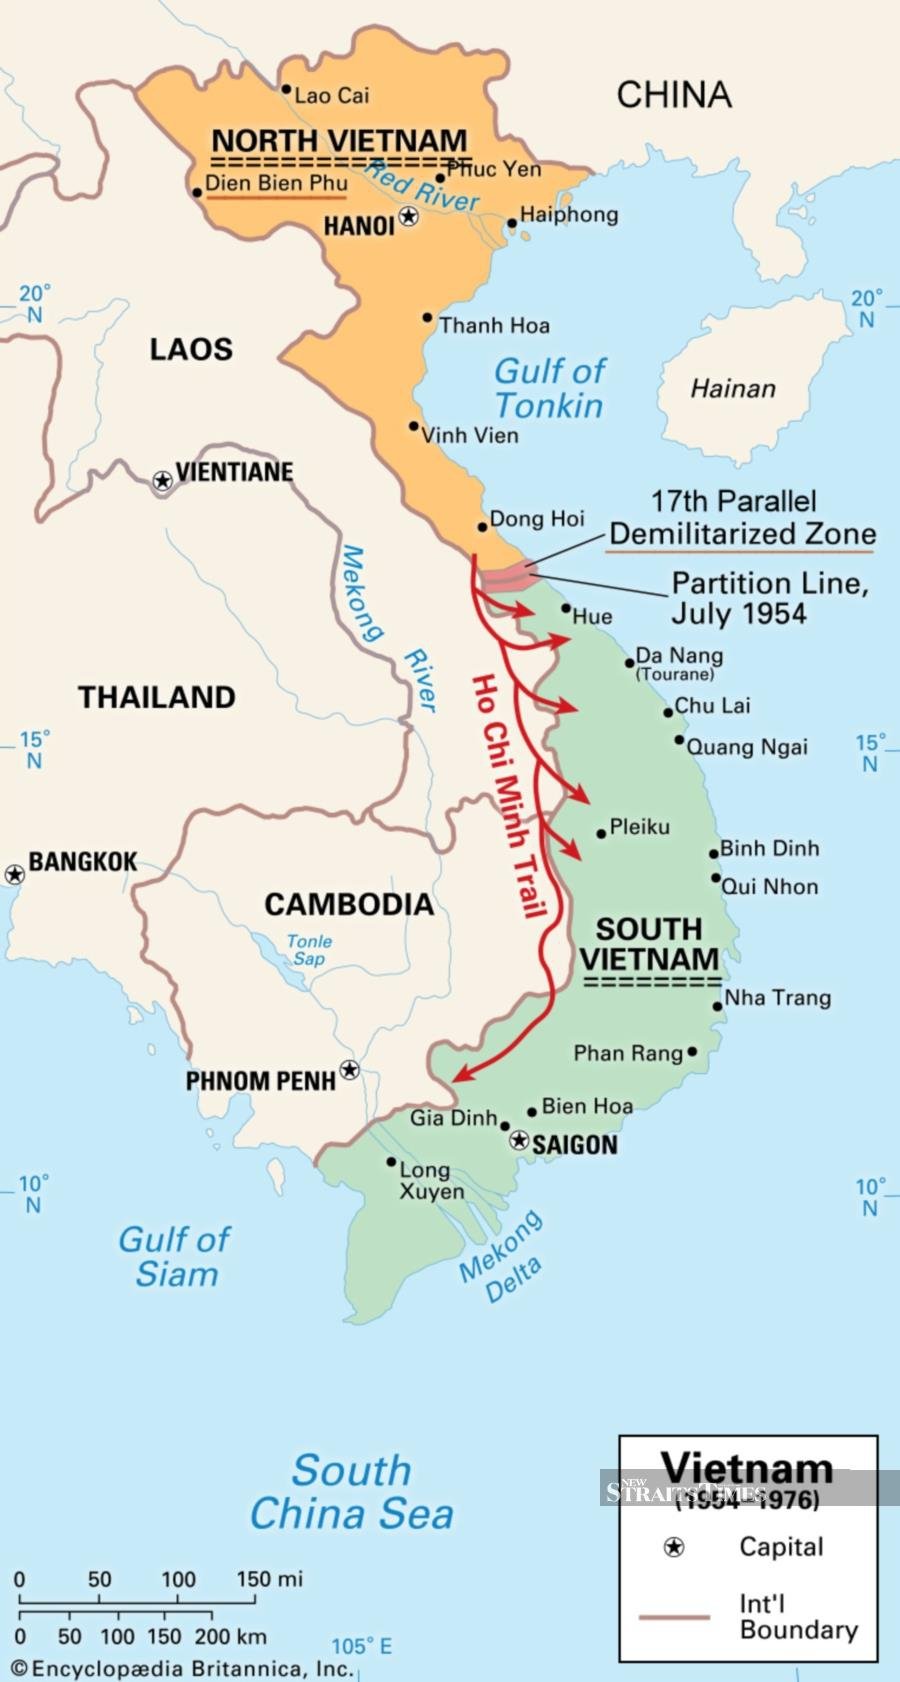  Map of Vietnam, 1954 - 1975.